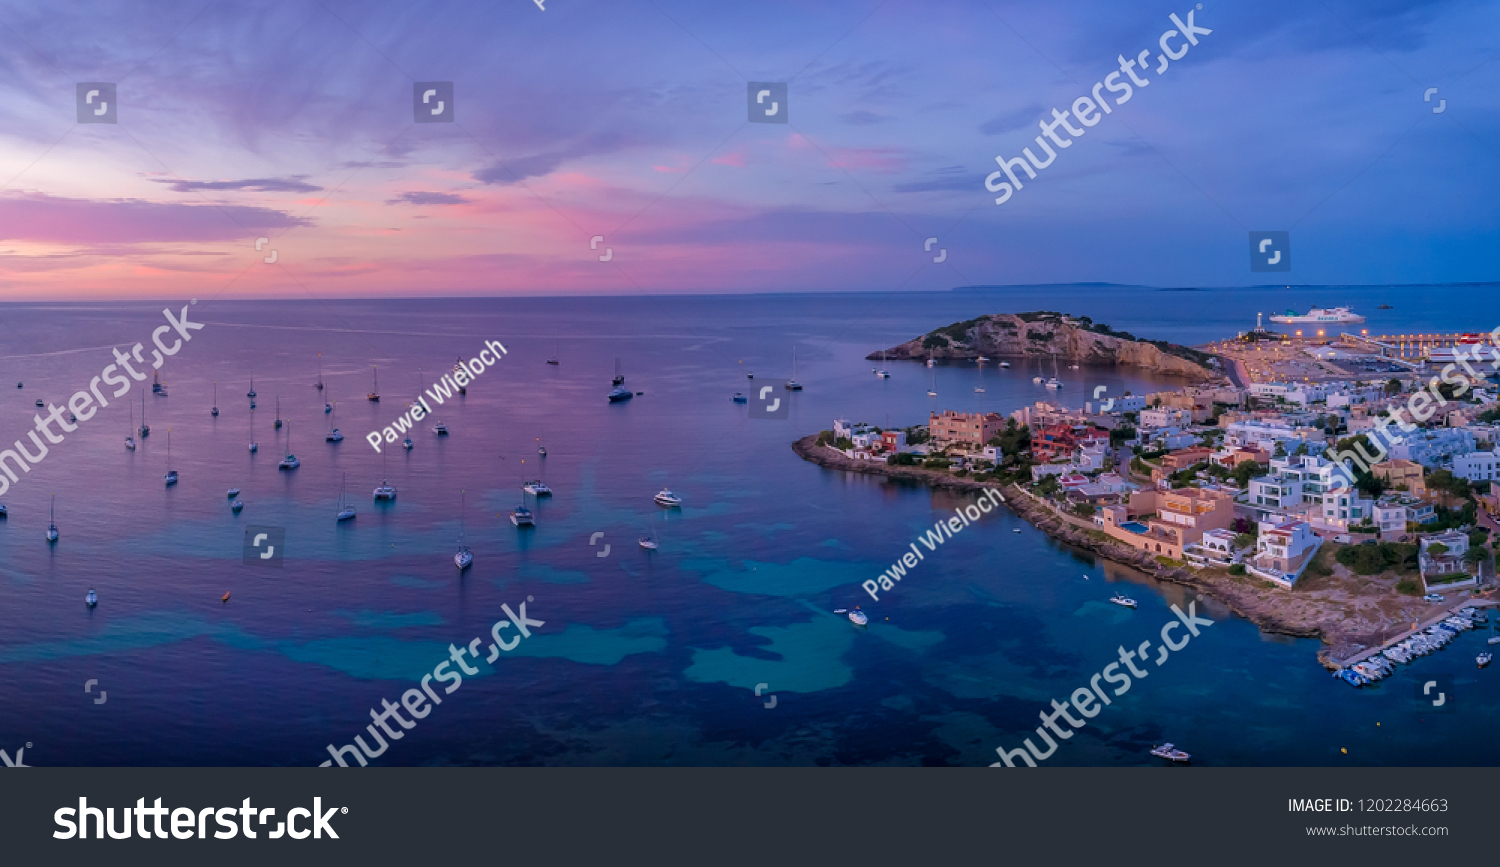 Stock Photo Ibiza Yachts Sunrise 1202284663 